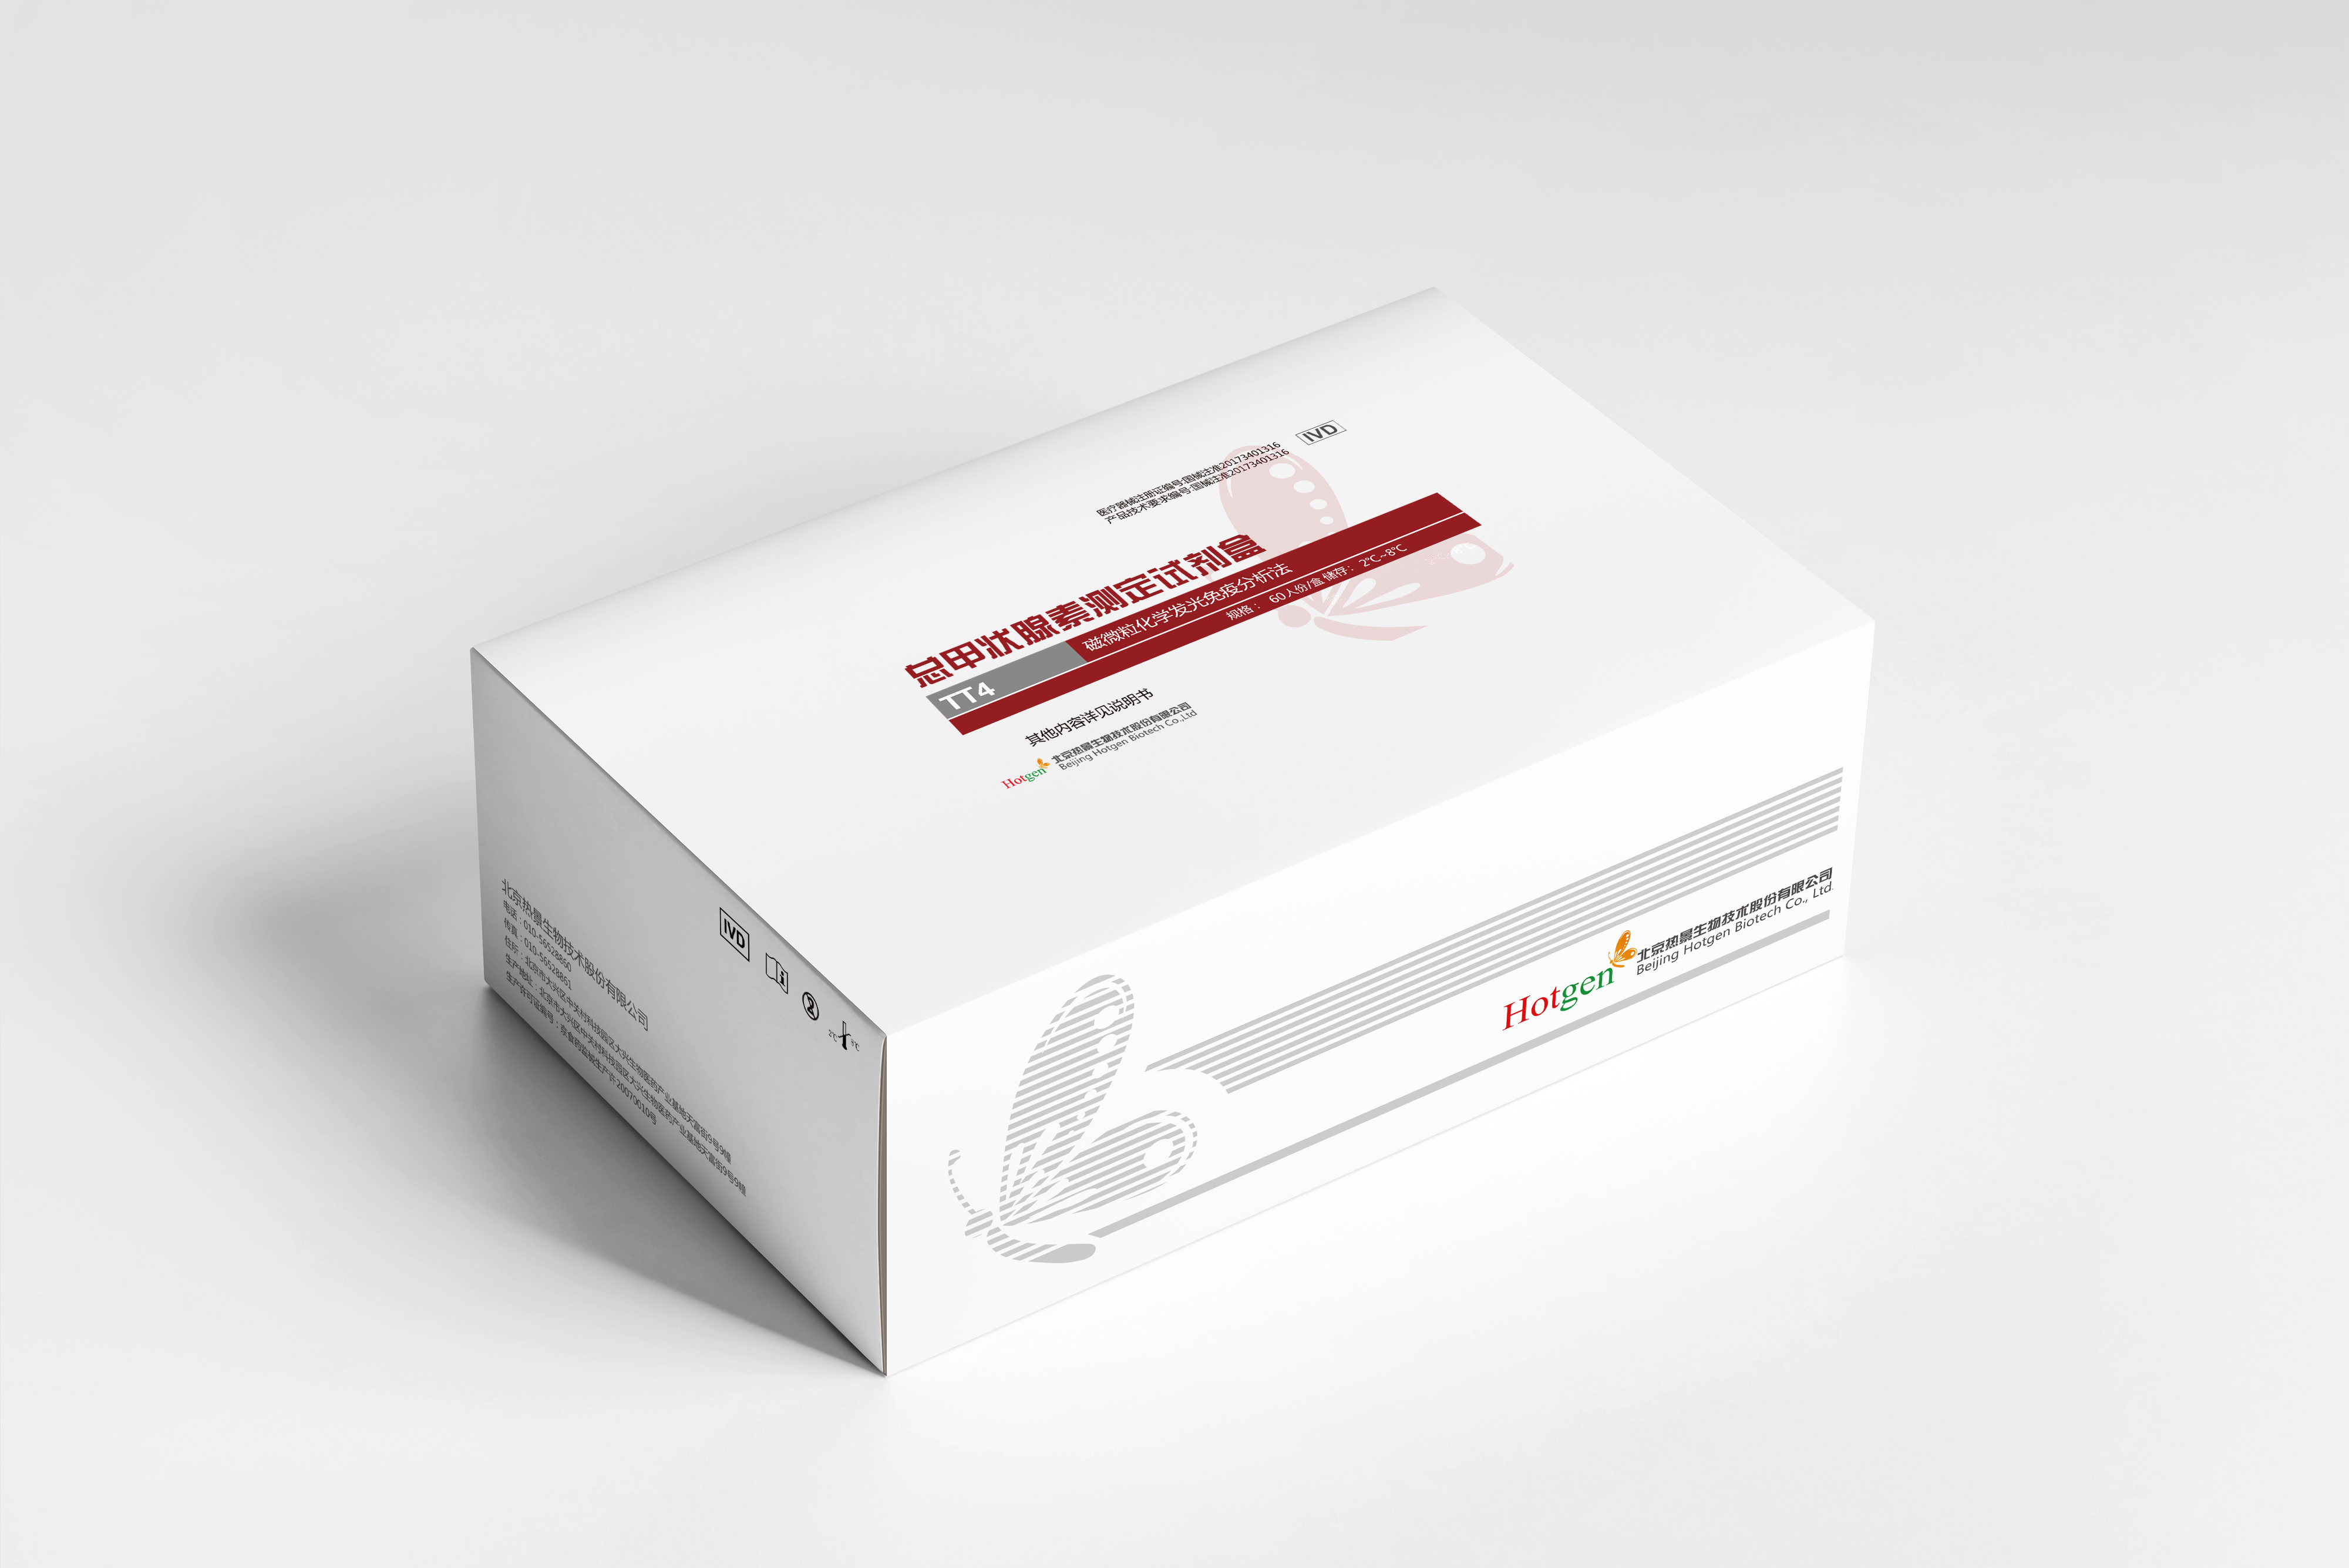 【热景】总甲状腺素测定试剂盒（磁微粒化学发光免疫分析法）/C2000